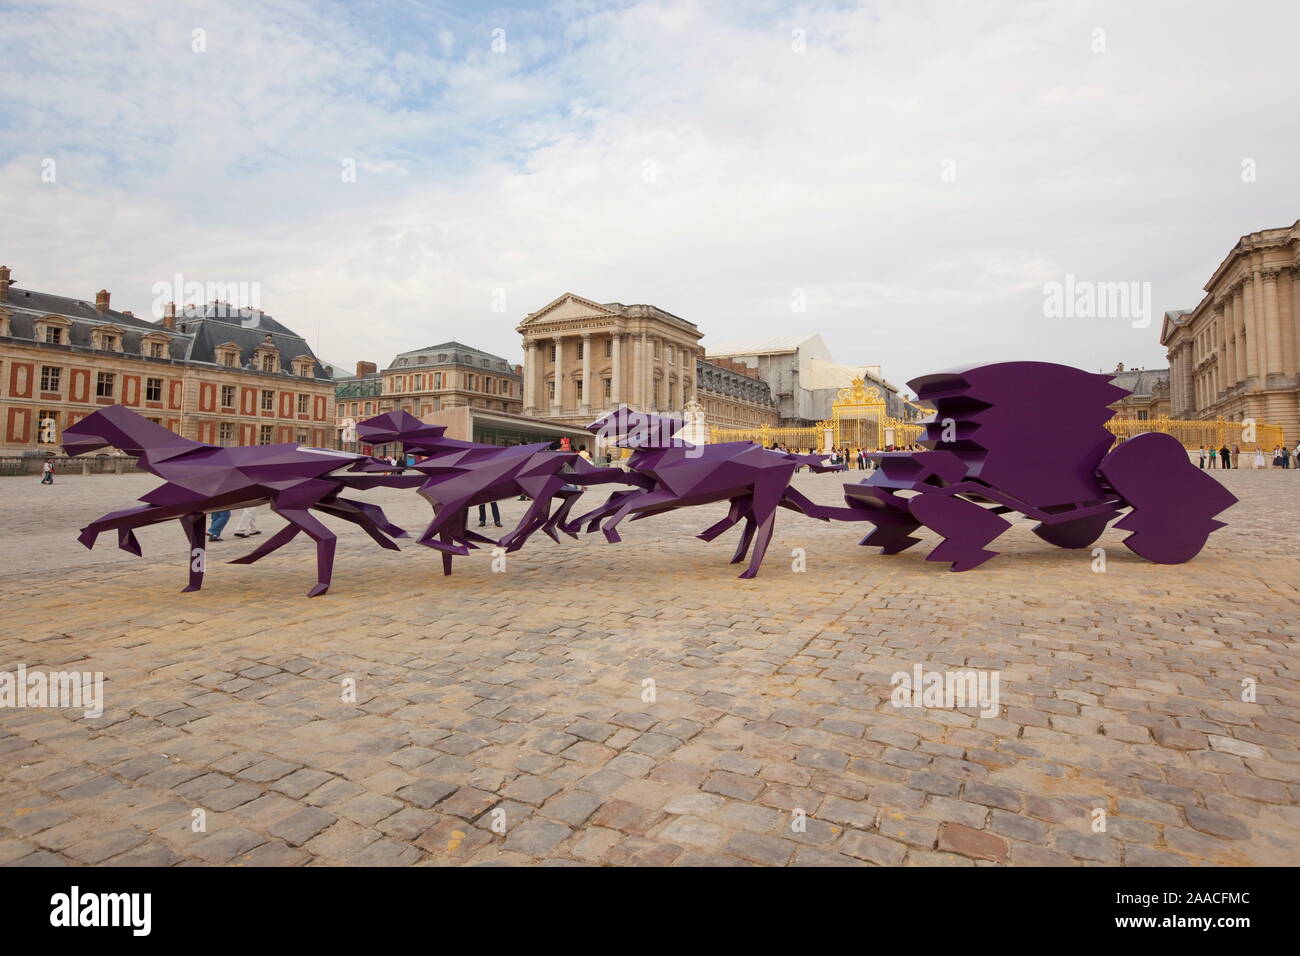 El artista plástico Xavier Veilhan SUCCESSFULLLY superaron el reto de fusionar con la arquitectura de Versalles, en un diálogo elocuente Foto de stock